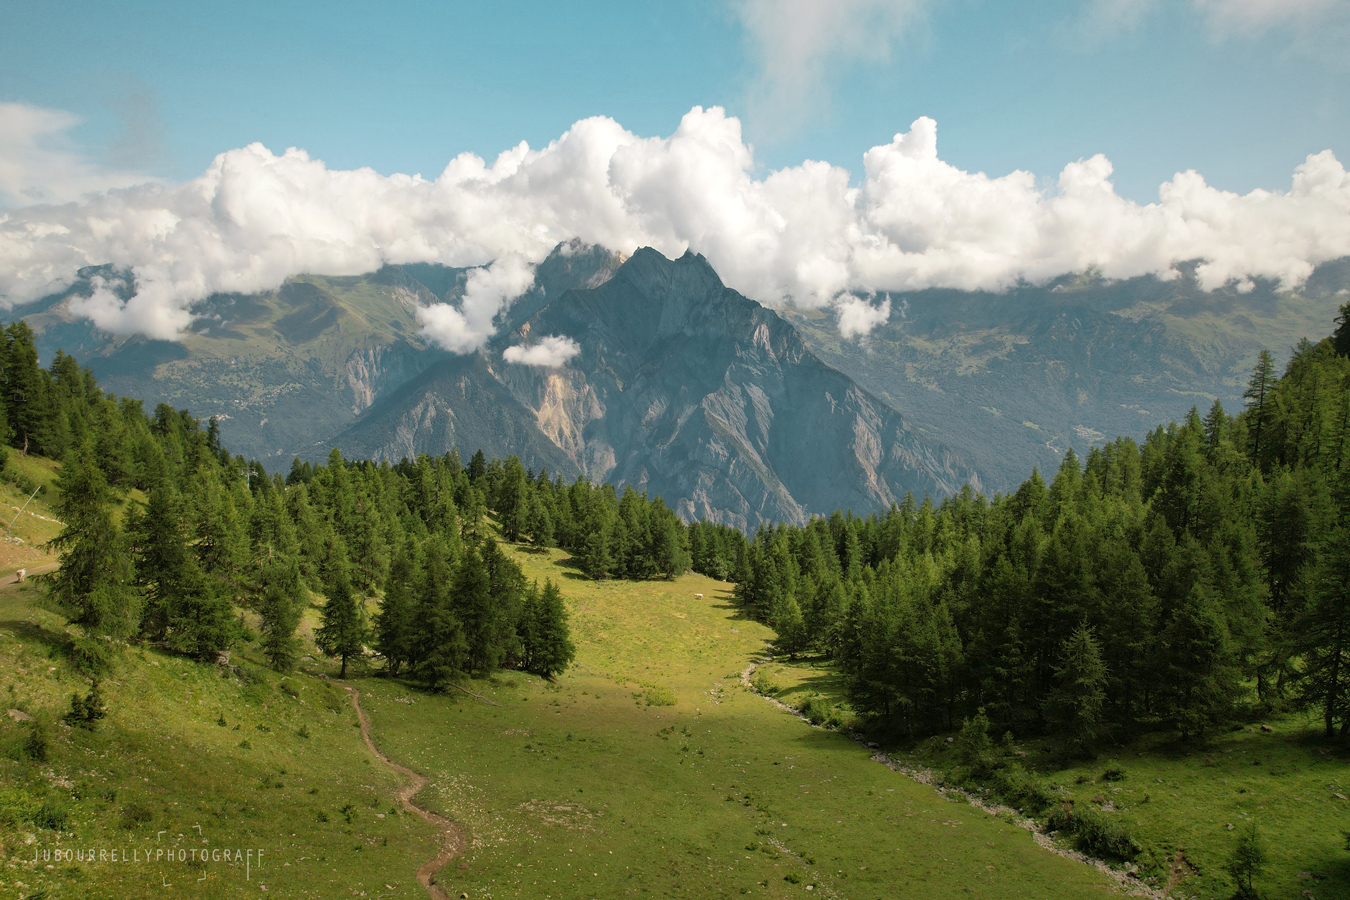 Vallée de la maurienne - Savoie, France ©jubourrellyphotograff